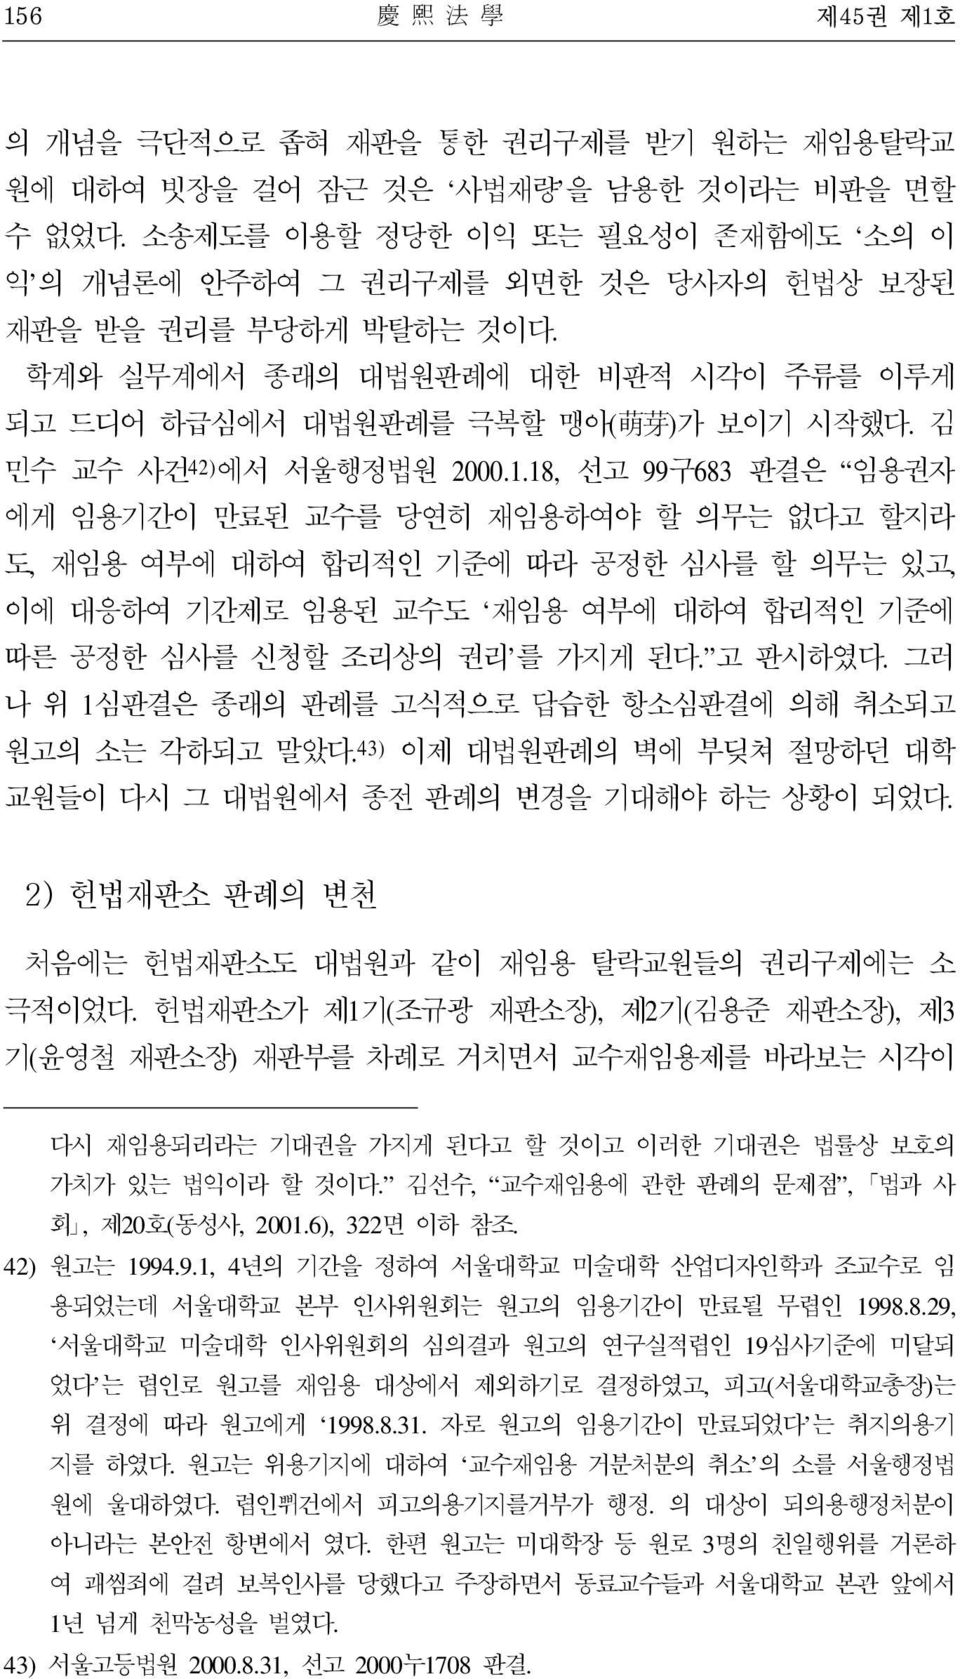 김 민수 교수 사건 42) 에서 서울행정법원 2000.1.